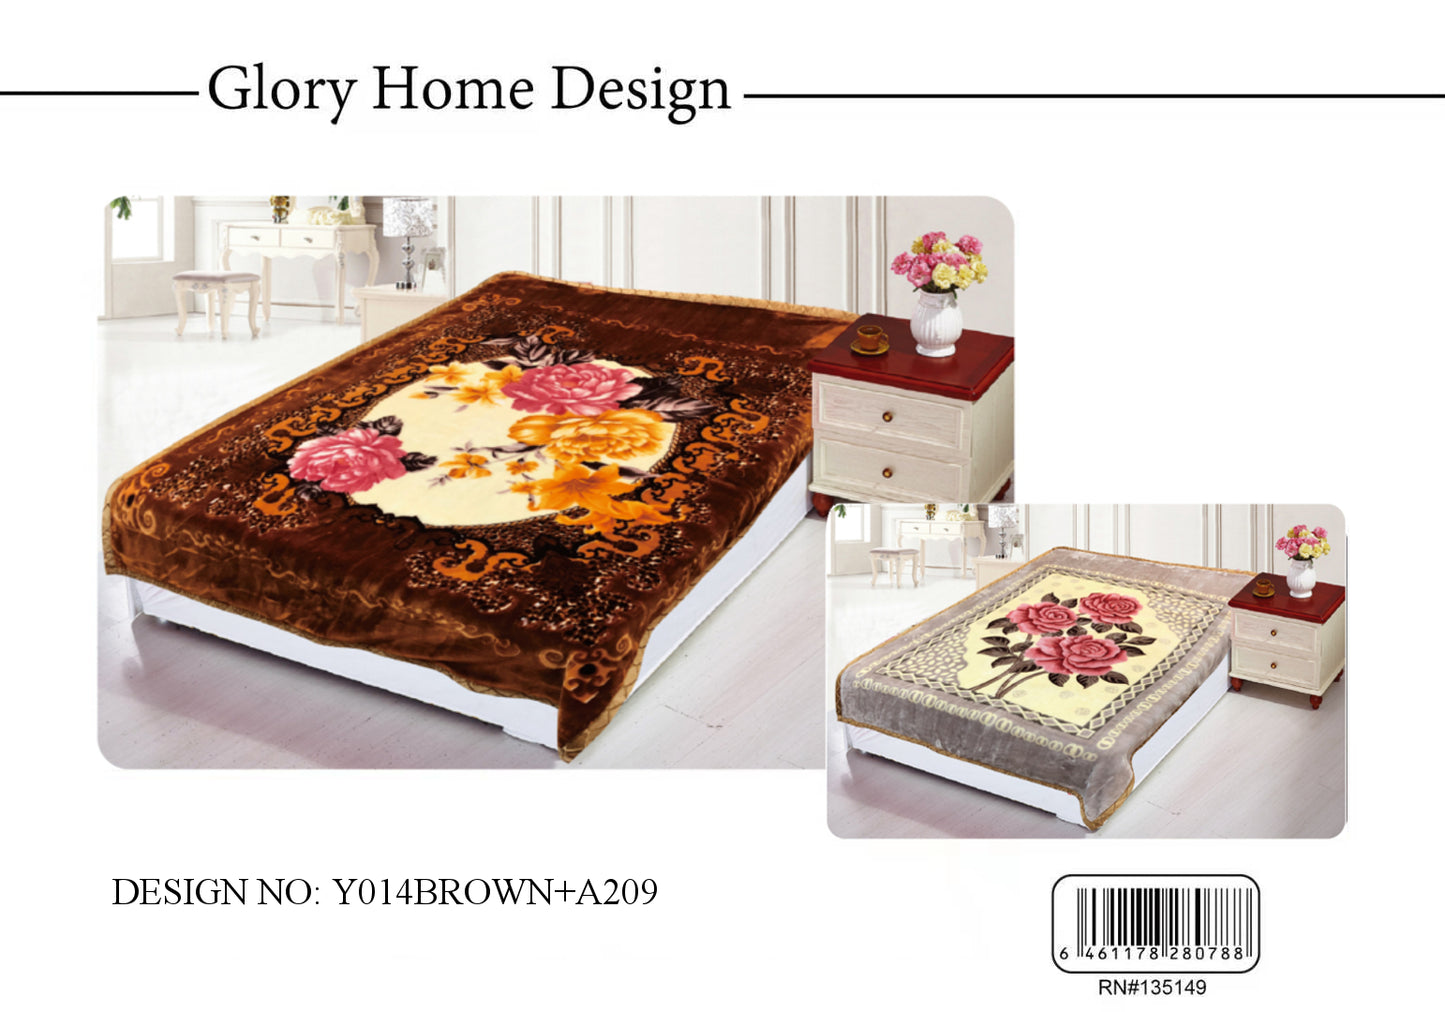 5 KG Queen Blanket - Glory Home Design